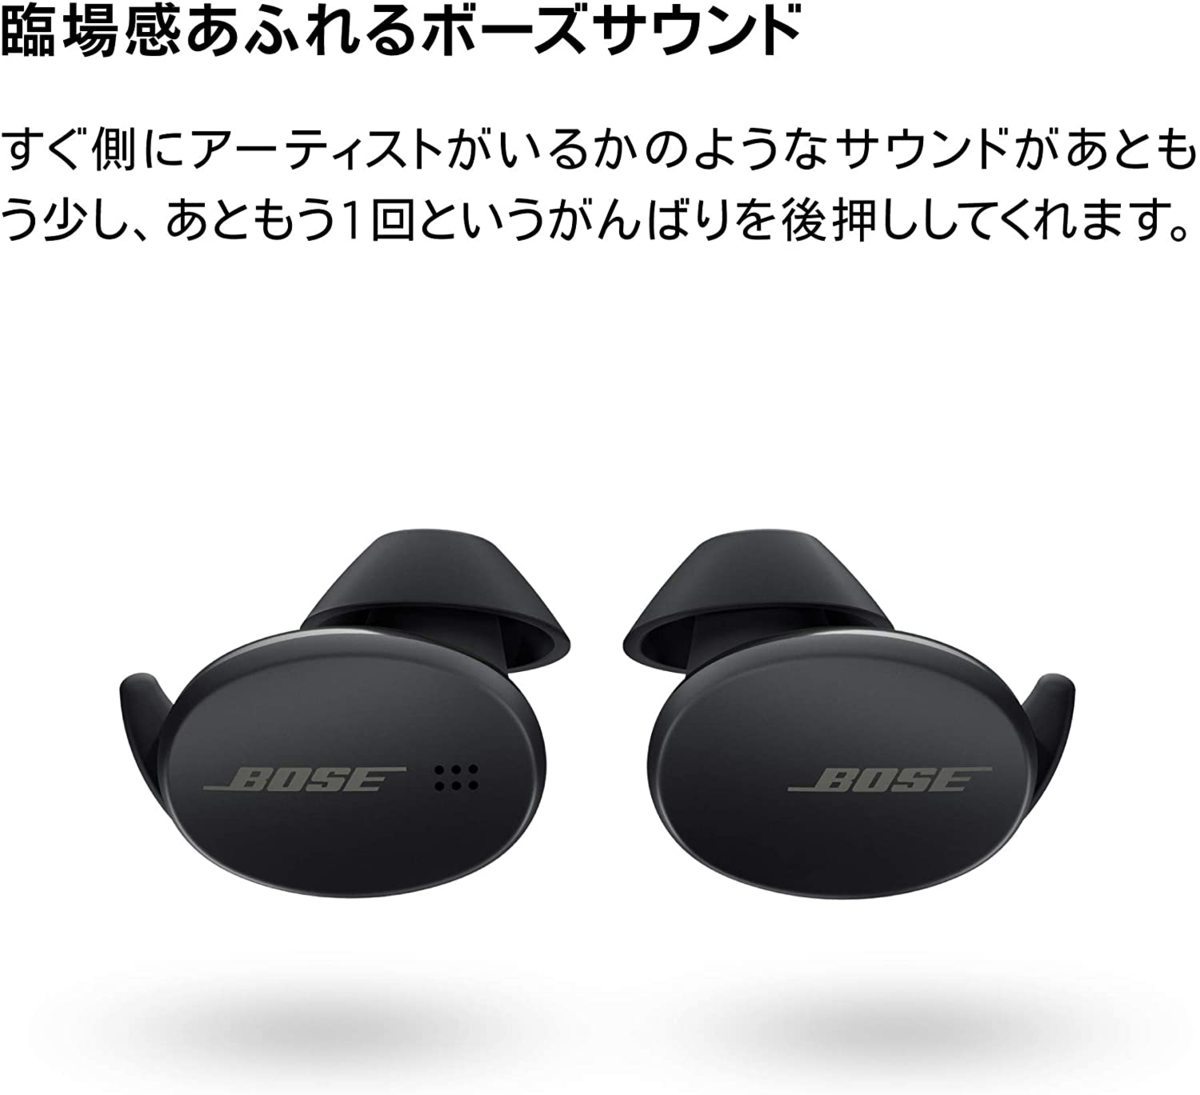 Yahoo!オークション - 新品未開封 Bose Sport Earbuds 完全ワイ...